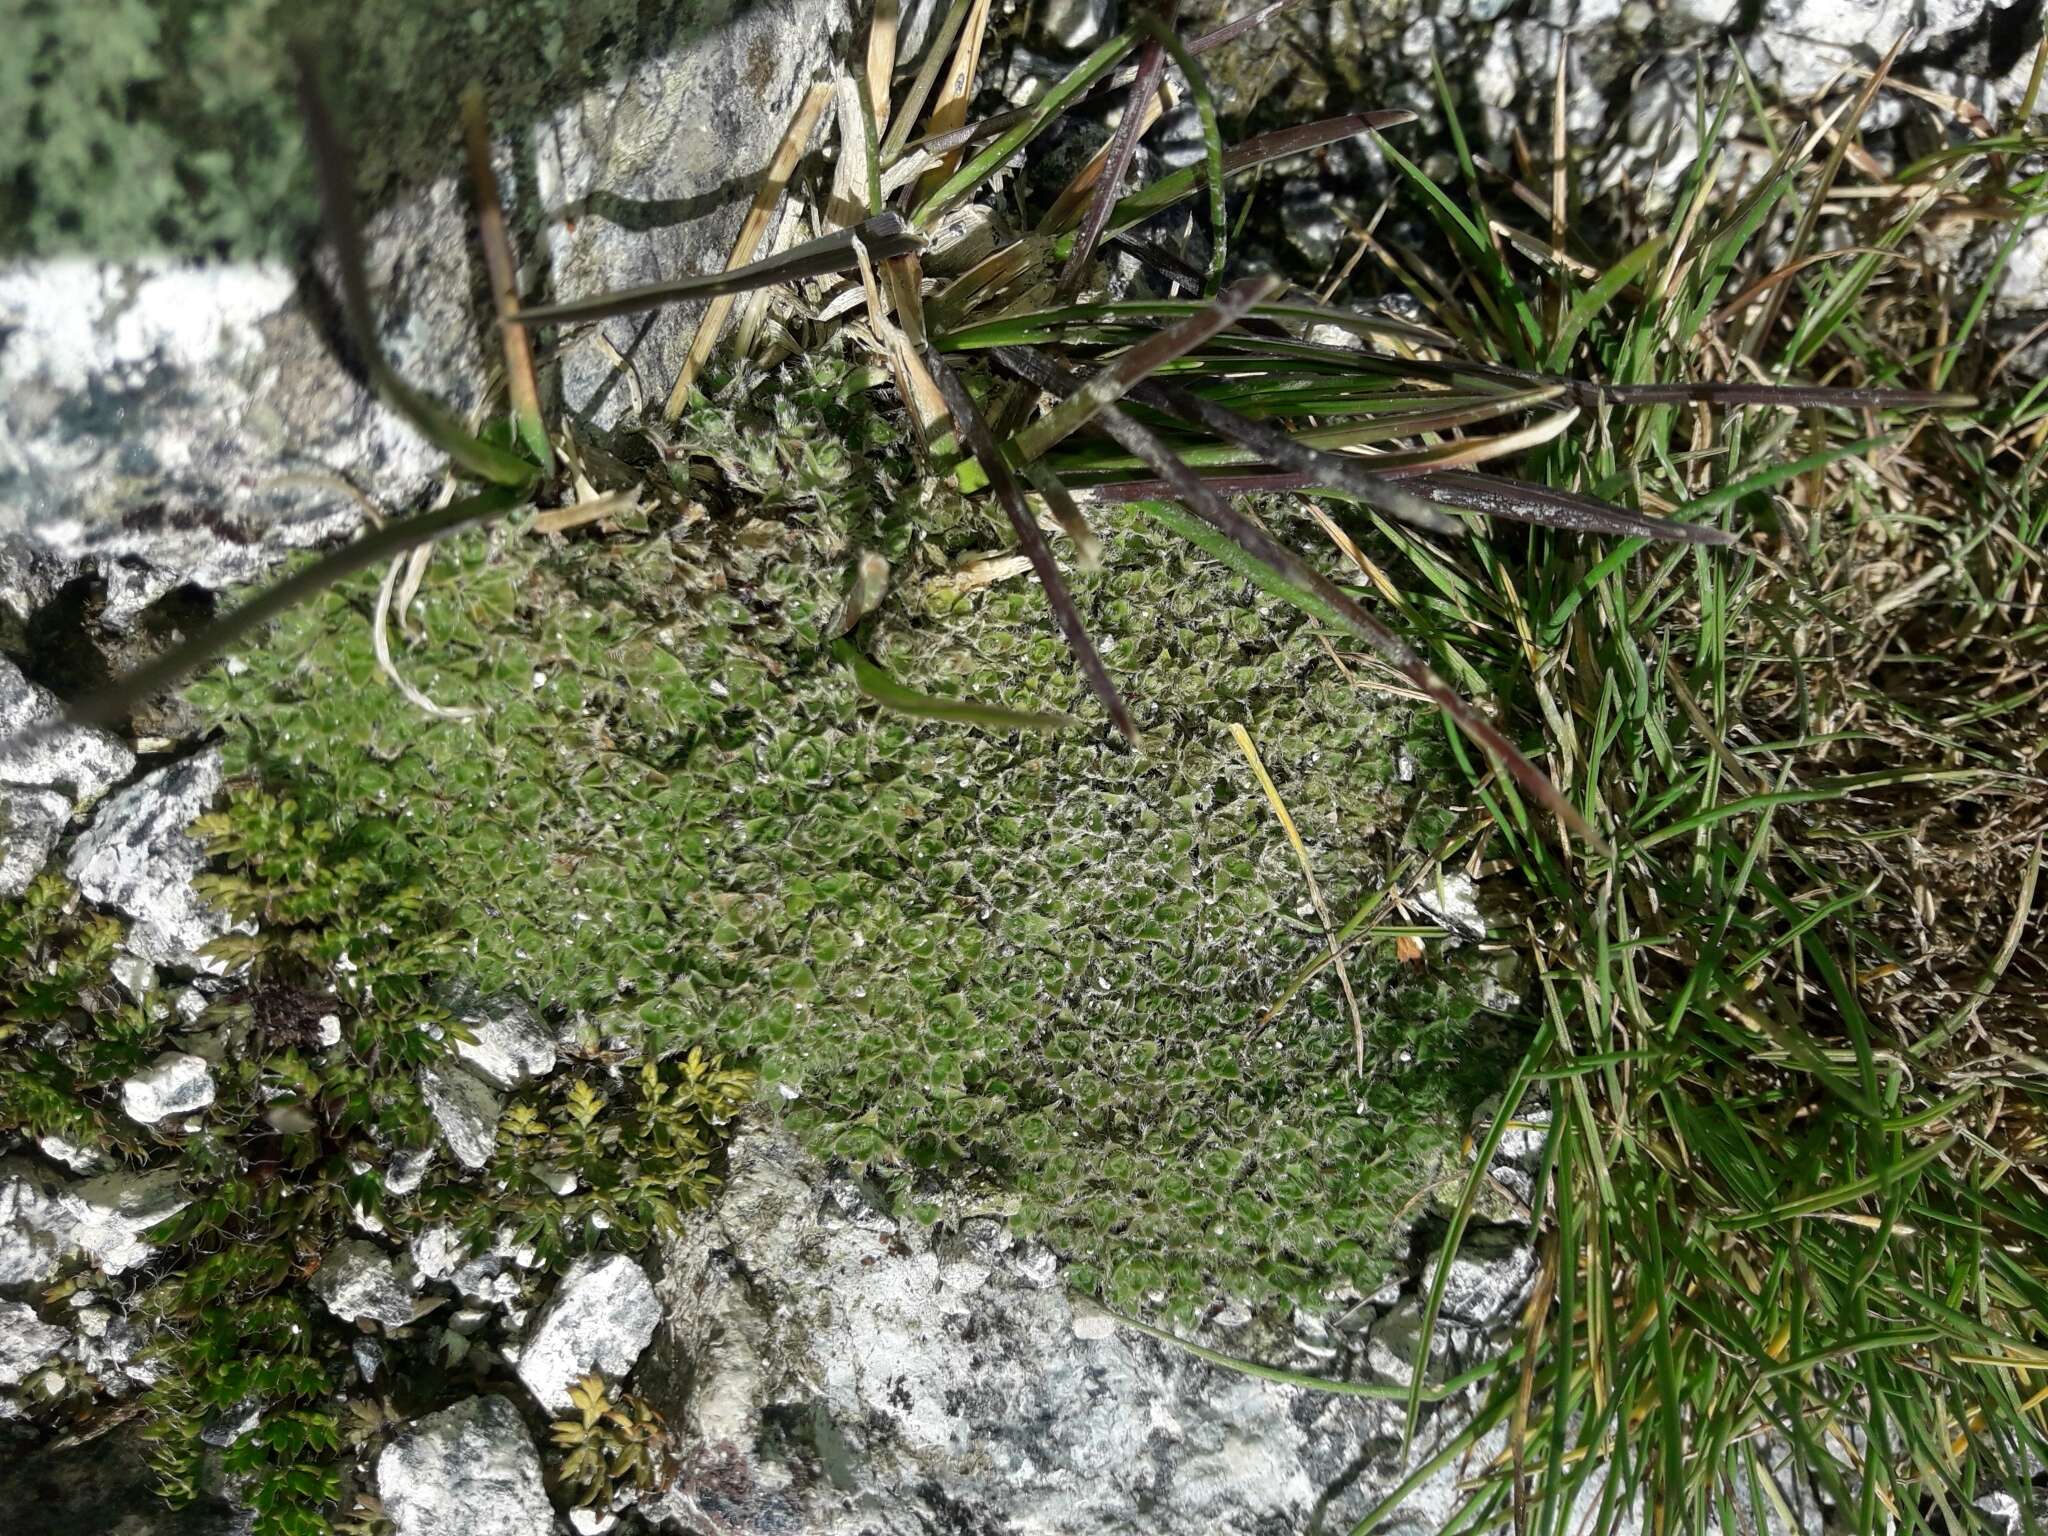 Imagem de Veronica ciliolata subsp. fiordensis (Ashwin) Meudt